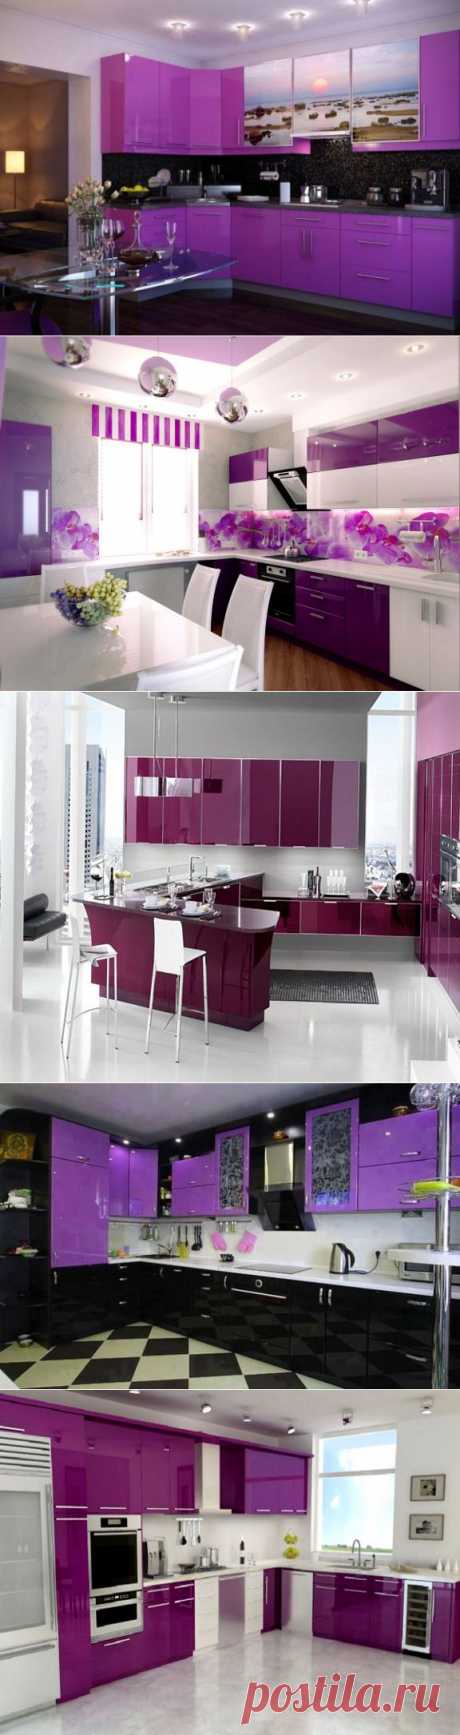 Дизайн интерьера фиолетовой кухни